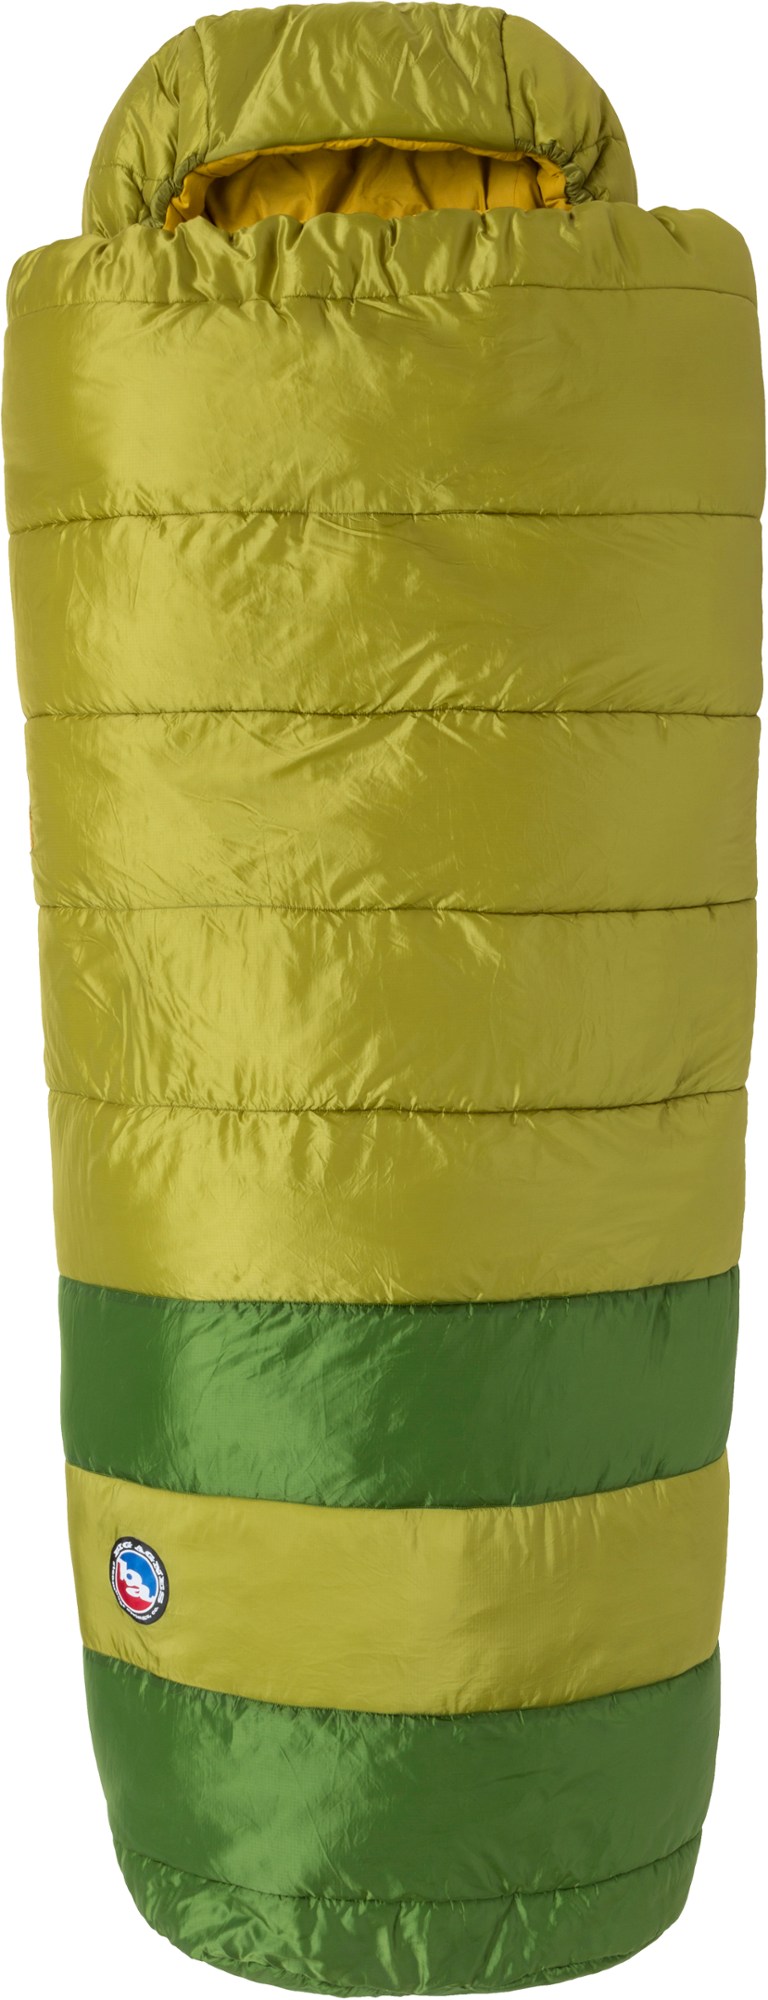 спальный мешок echo park 0 big agnes зеленый Спальный мешок Echo Park 0 Big Agnes, зеленый